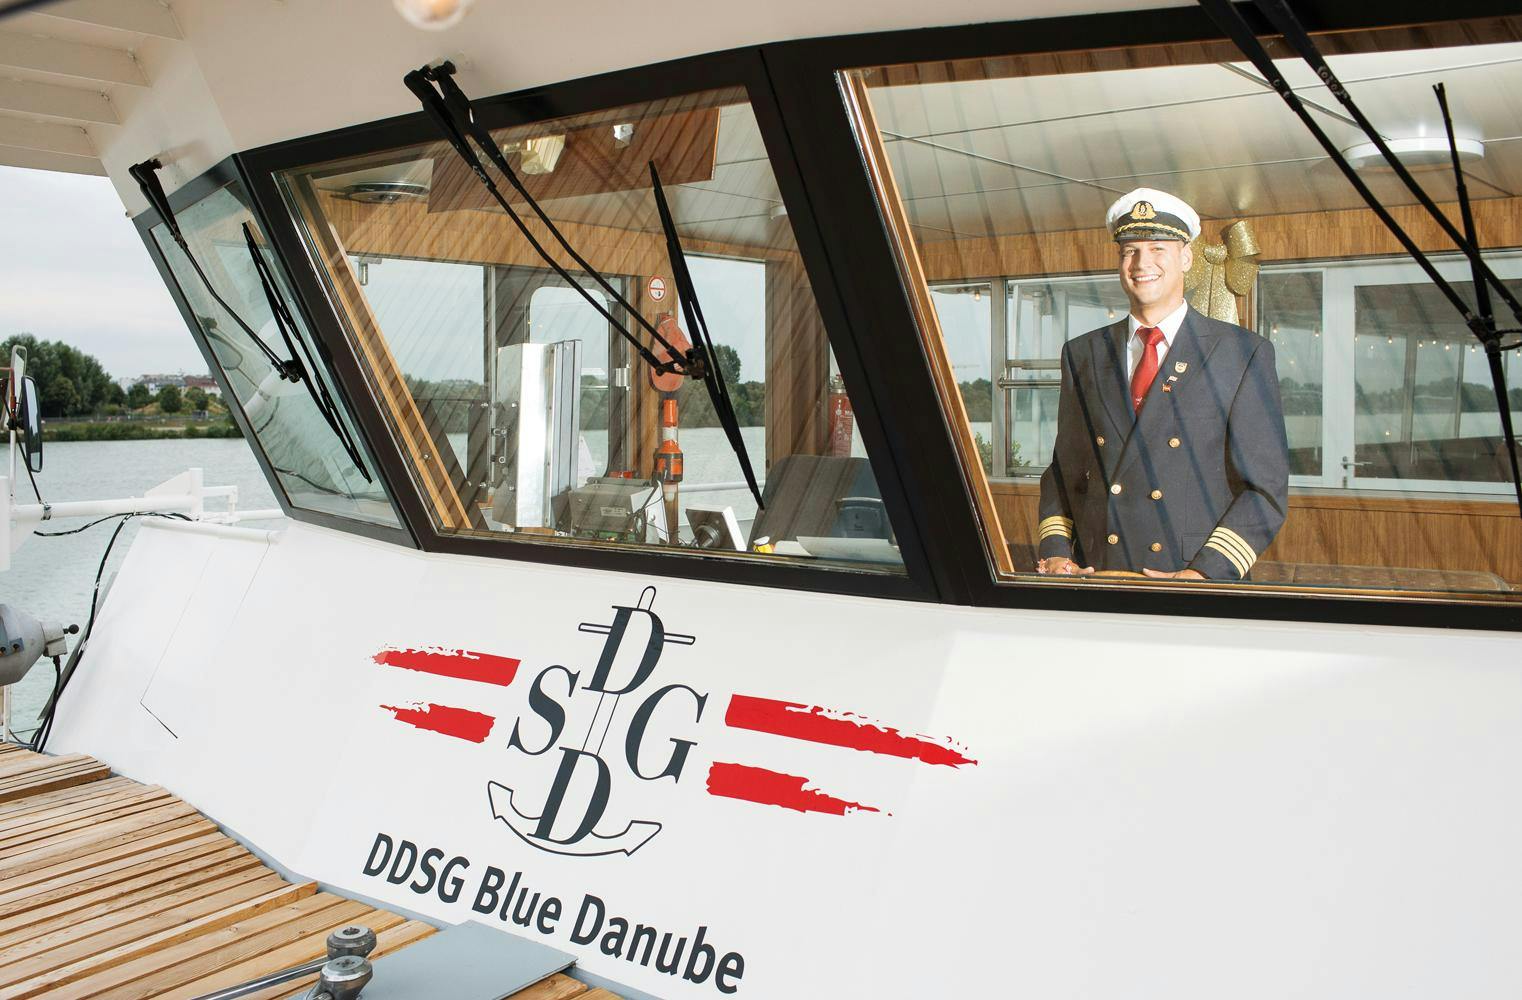 Einmal Kapitän sein | die MS Dürnstein auf der Donau fahren